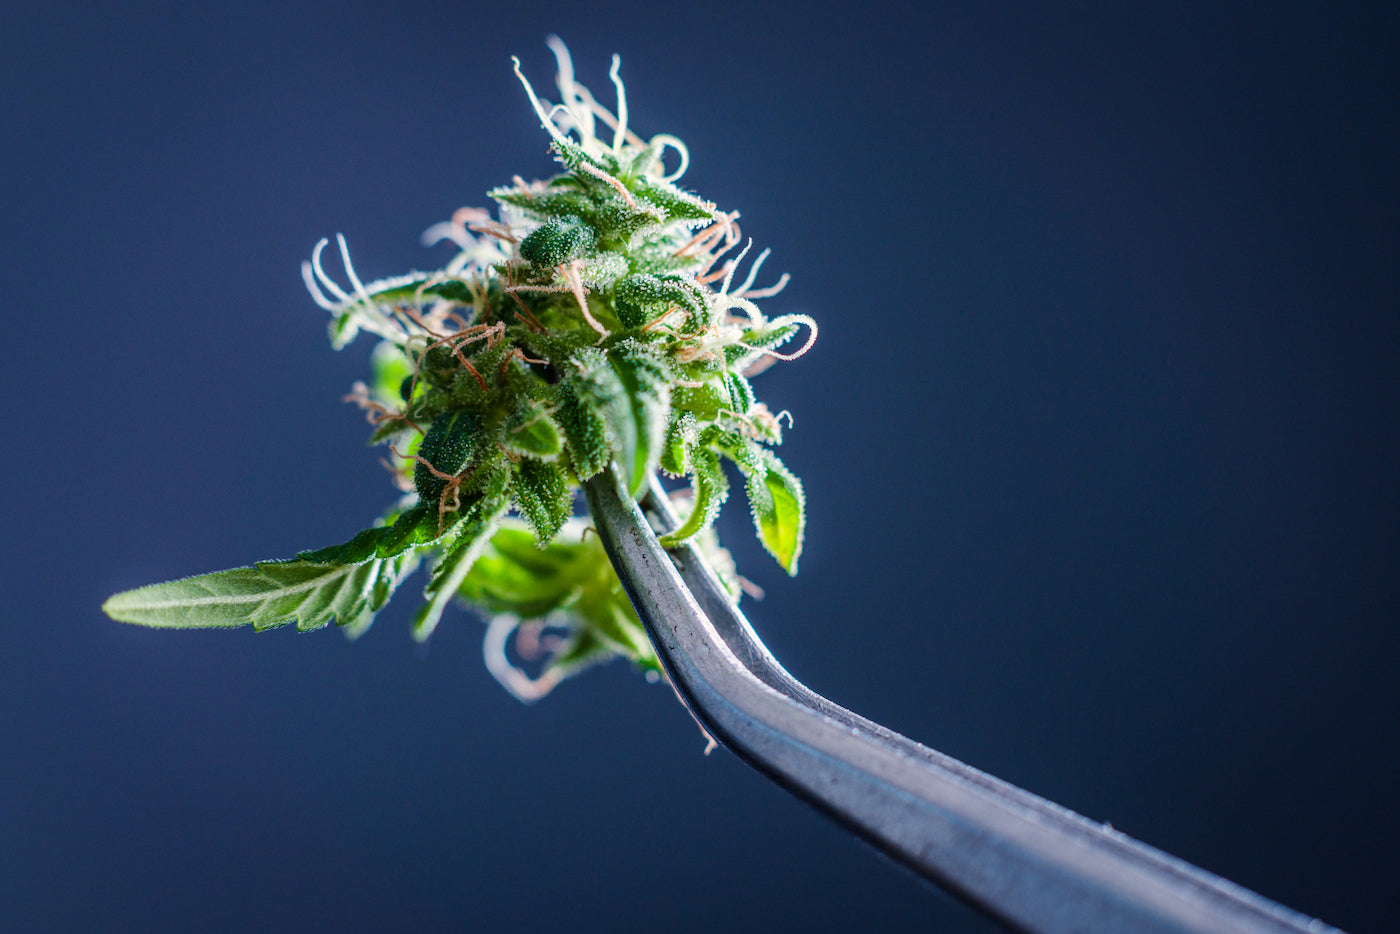 fleur de cbd de chez maison sativa testée en laboratoire indépendant pour garantir un taux de THC inférieur à 0,3% en conformité avec la législation